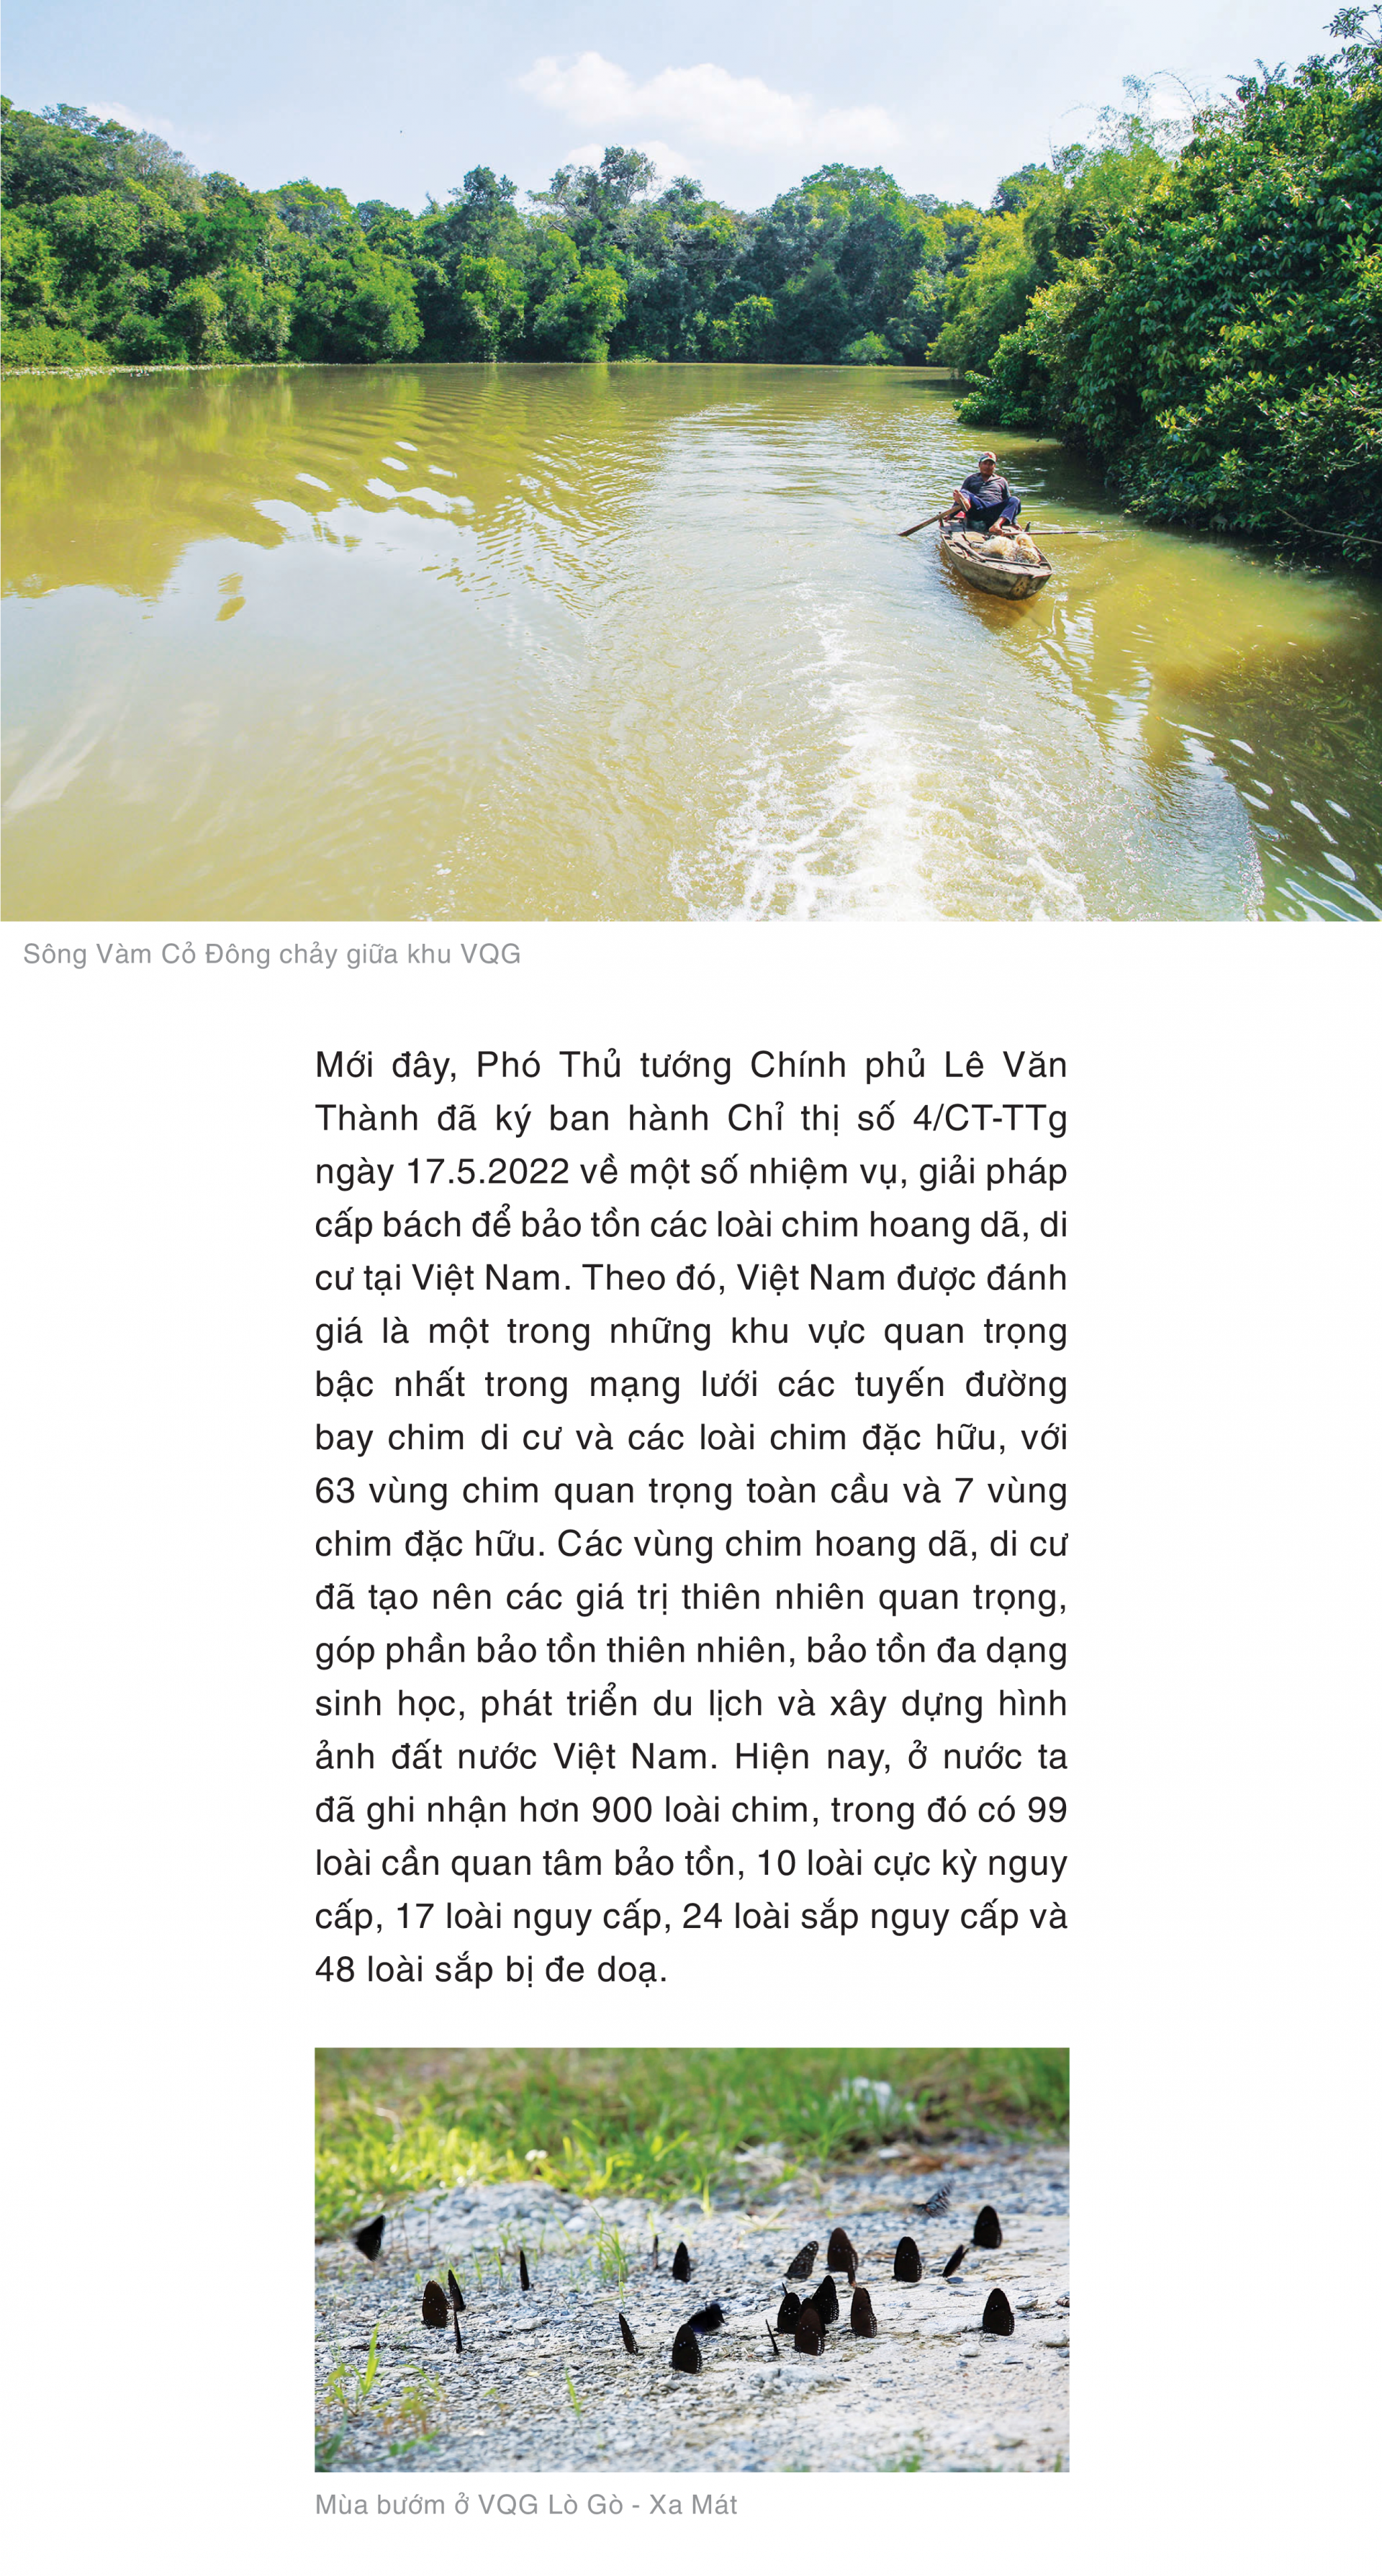 Vườn di sản ASEAN Lò Gò - Xa Mát: Khu bảo tồn tự nhiên độc đáo ở Việt Nam